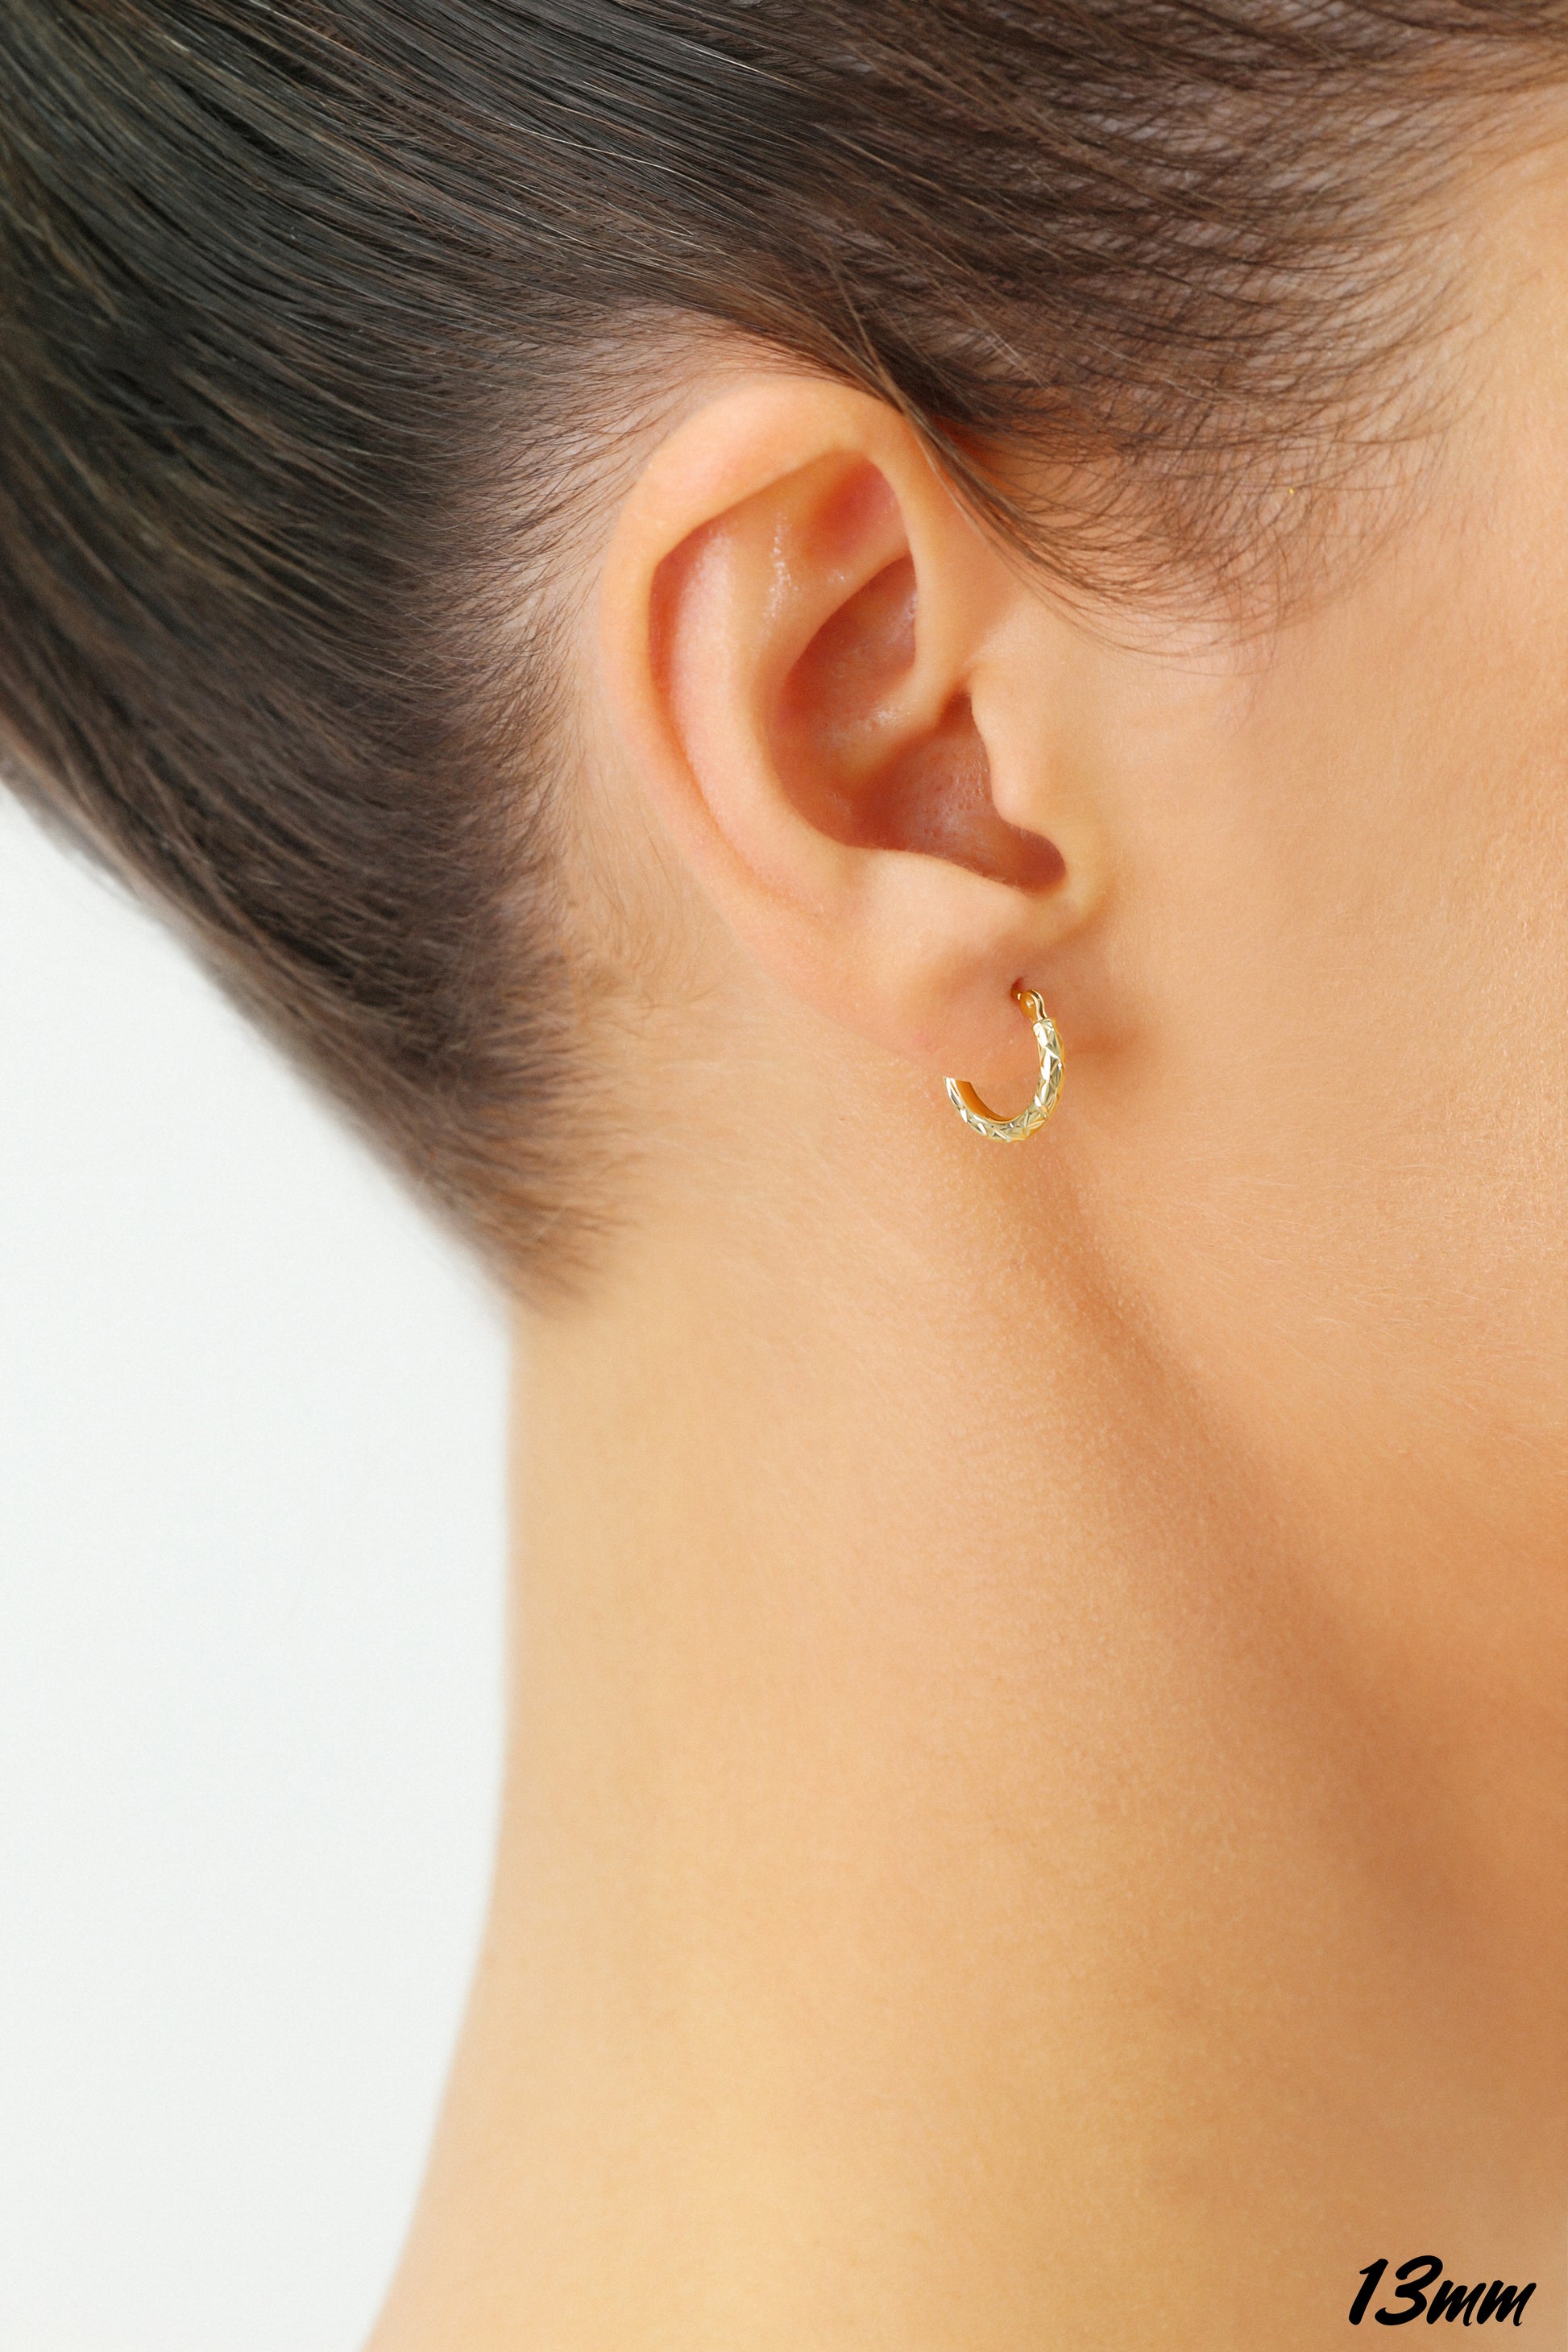 Medium Hoop Earrings in Yellow, Rose or White Gold